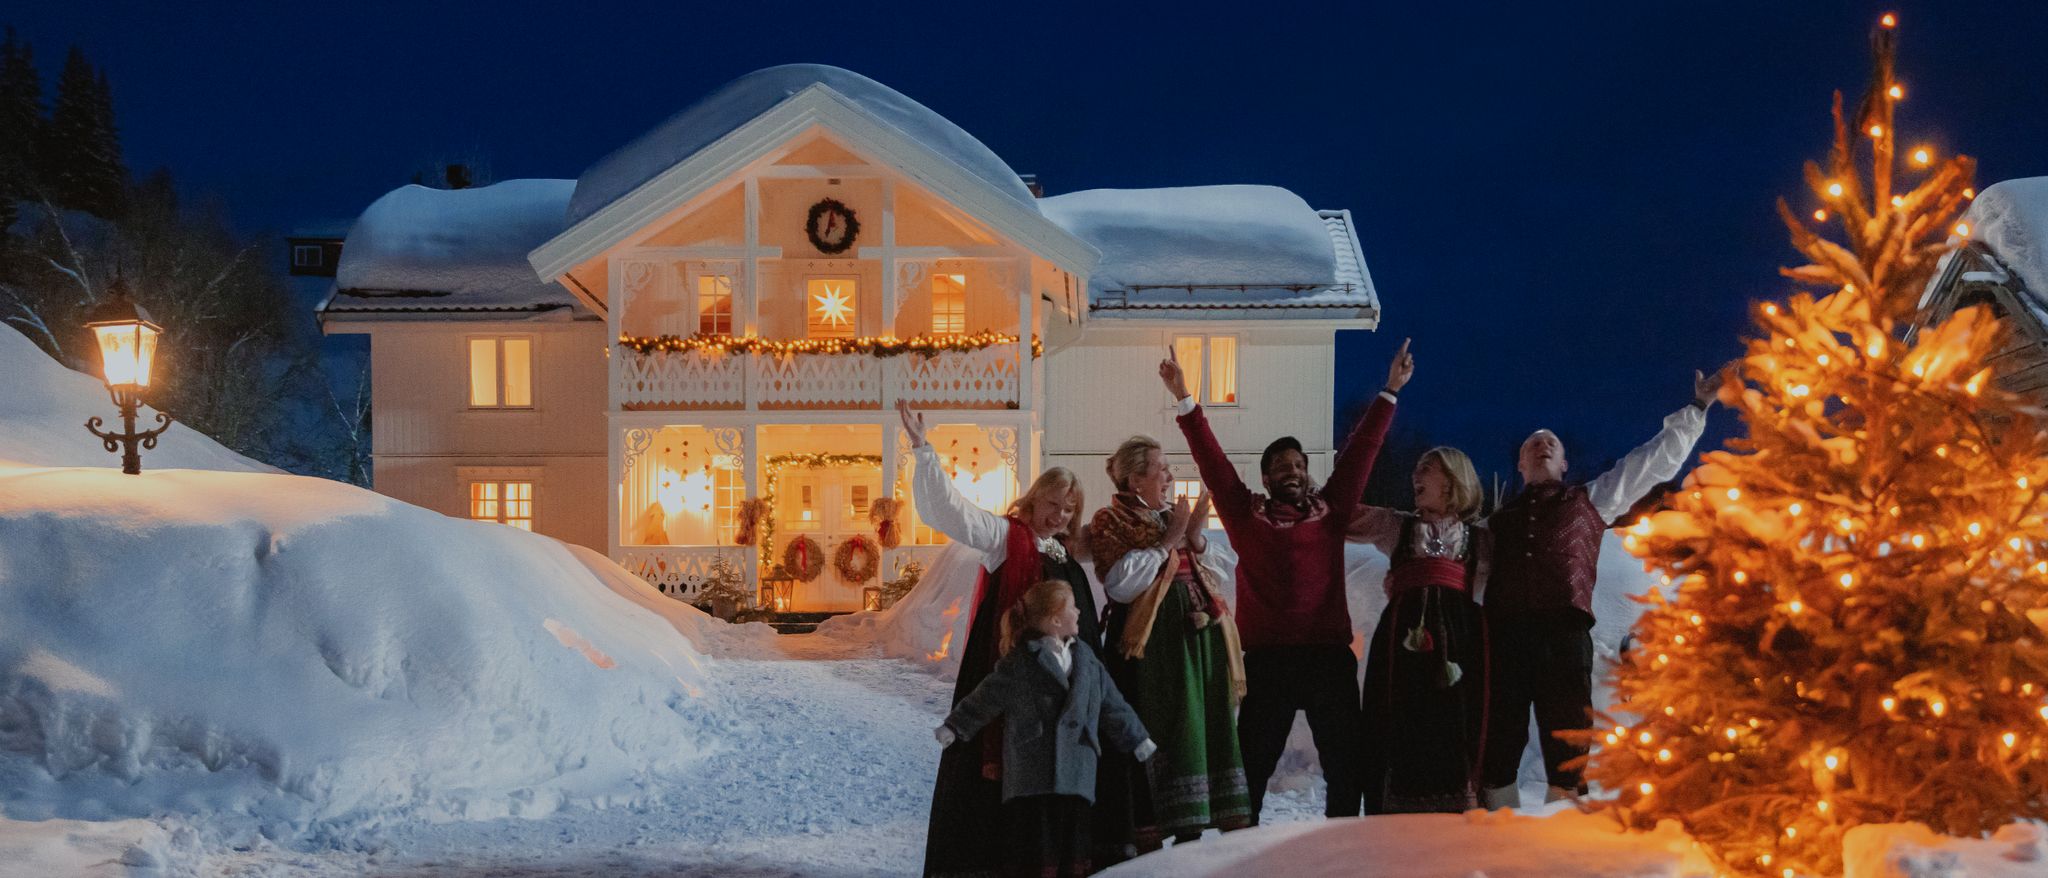 «Så var det jul igjen» er en uforløst norsk julekomedie